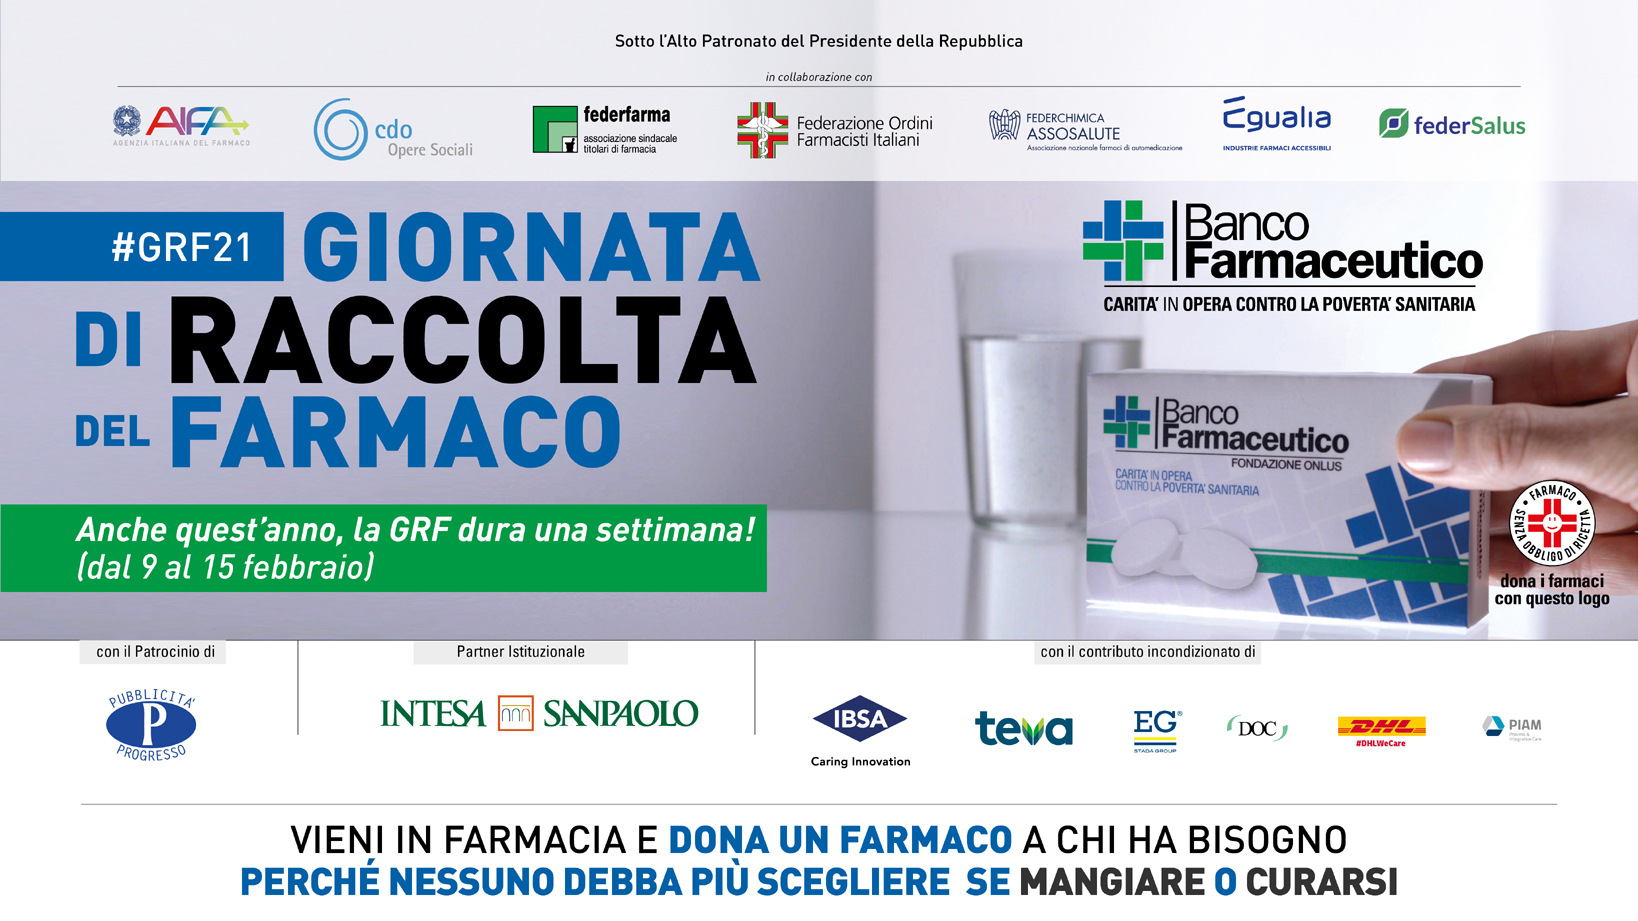 Torna il Banco Farmaceutico, l’anno scorso ha aiutato 65mila persone nel Veneto